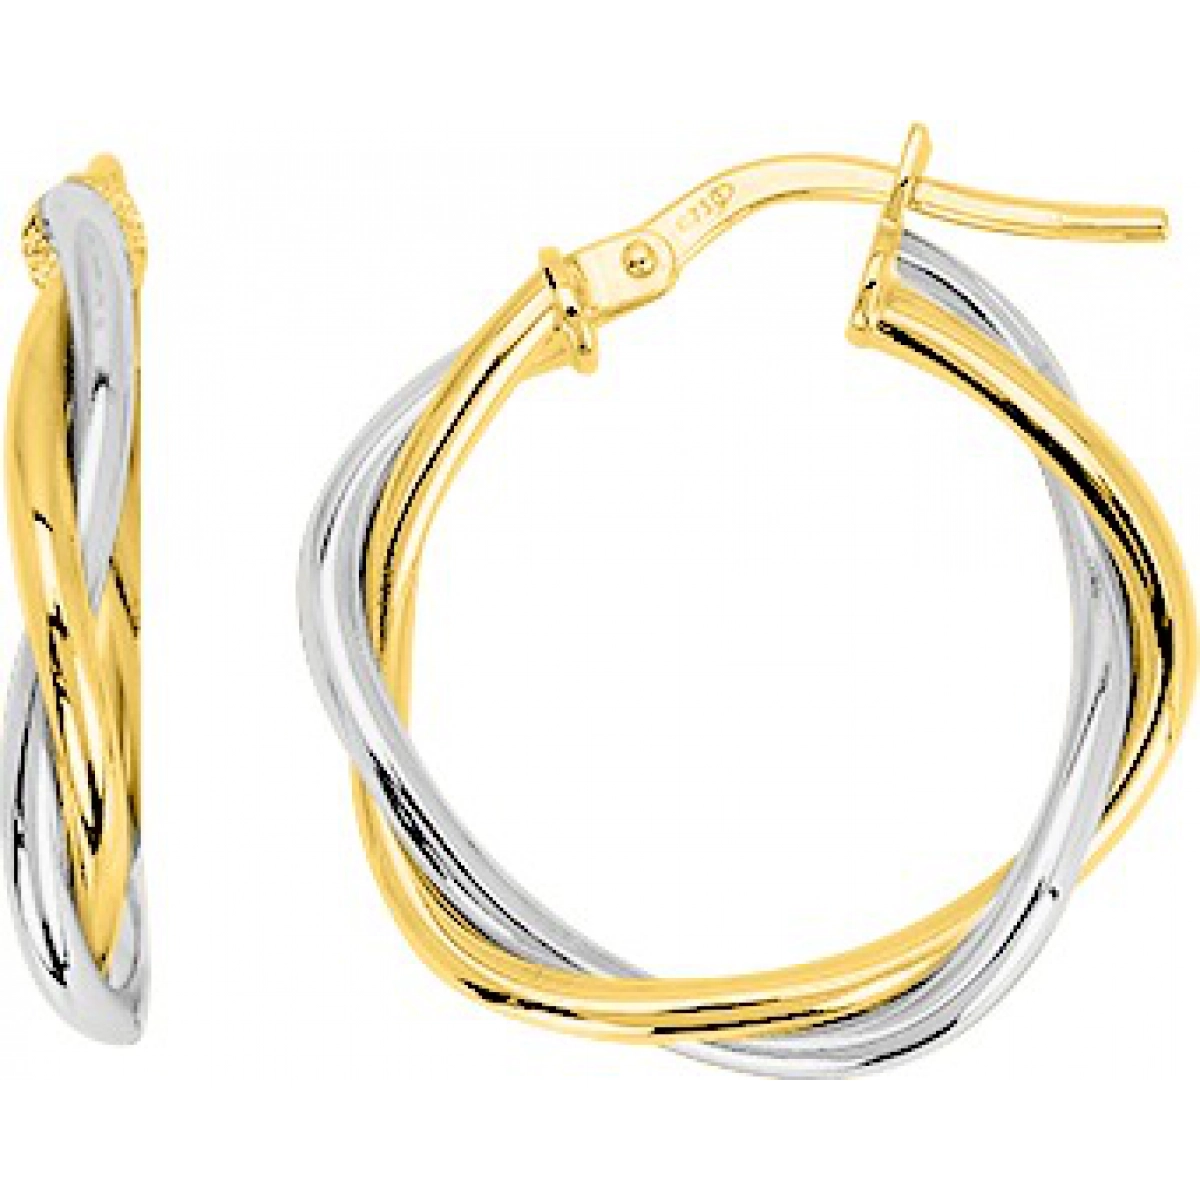 Hoops earrings pair 18K 2TG  Lua Blanca  3627G.0